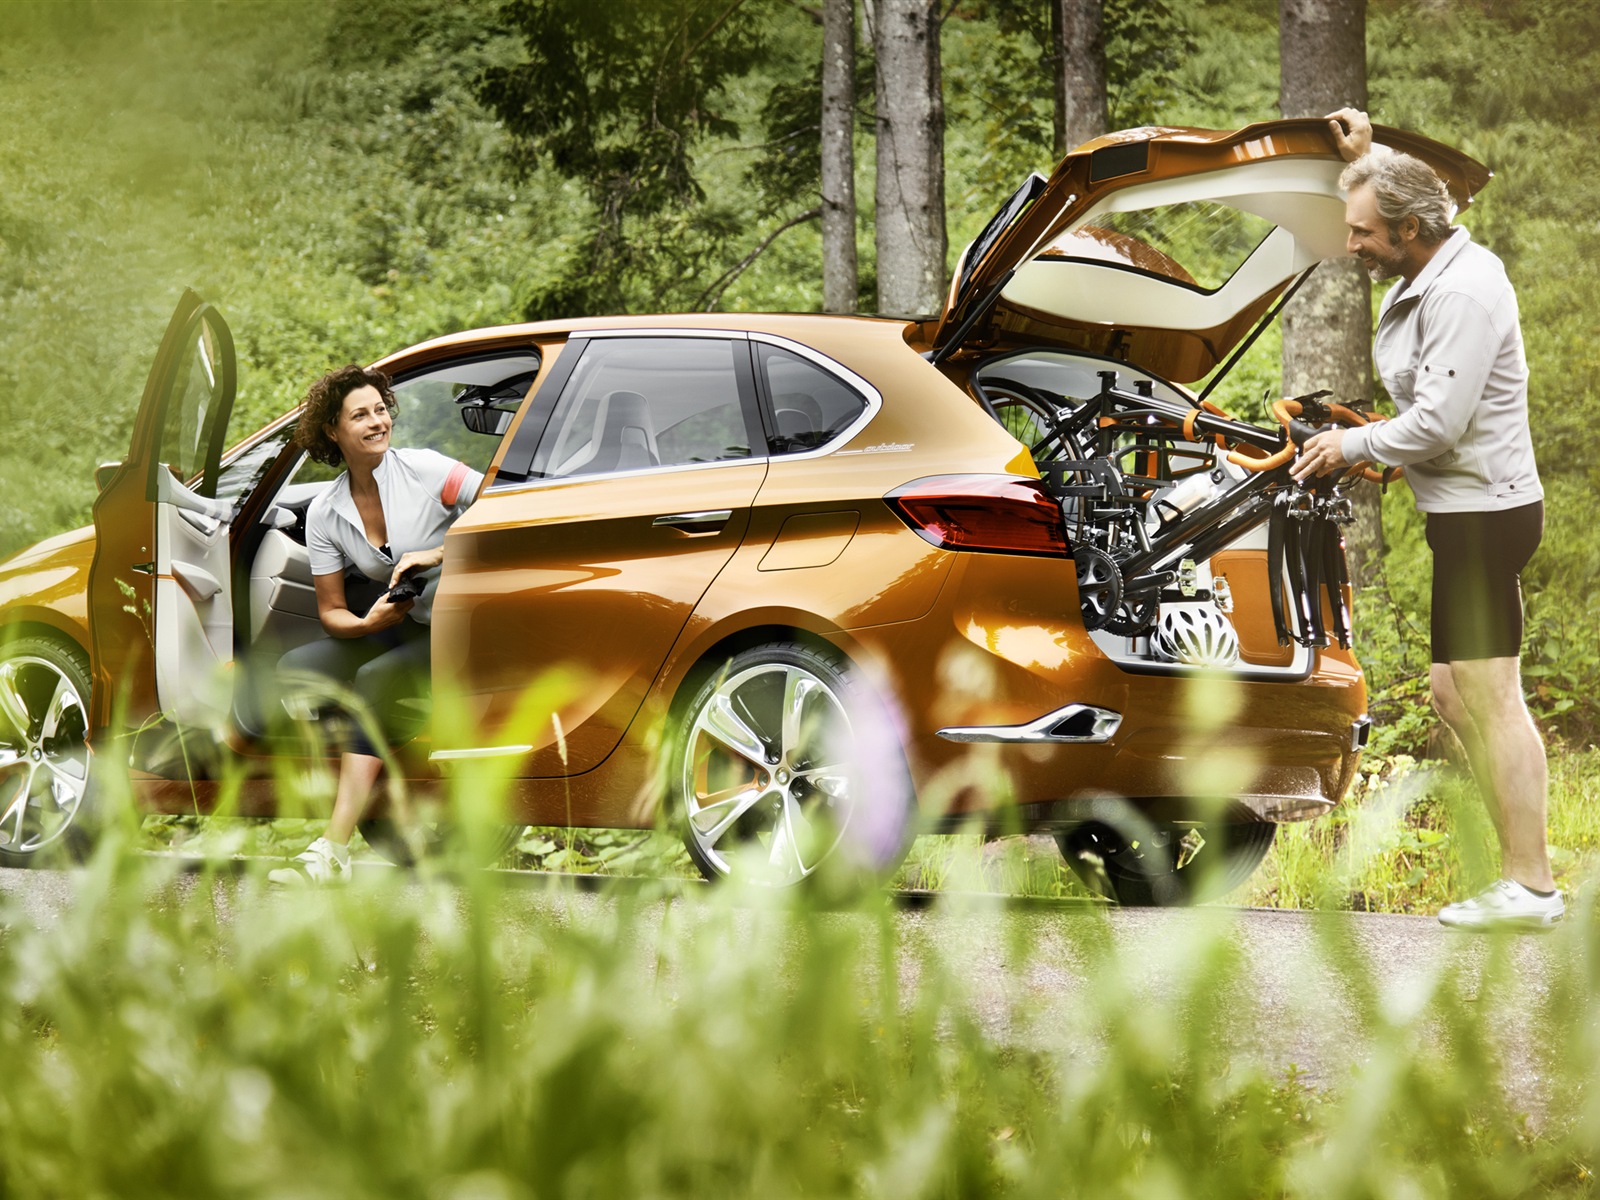 2013 BMW Concept Active Tourer 宝马旅行车 高清壁纸9 - 1600x1200